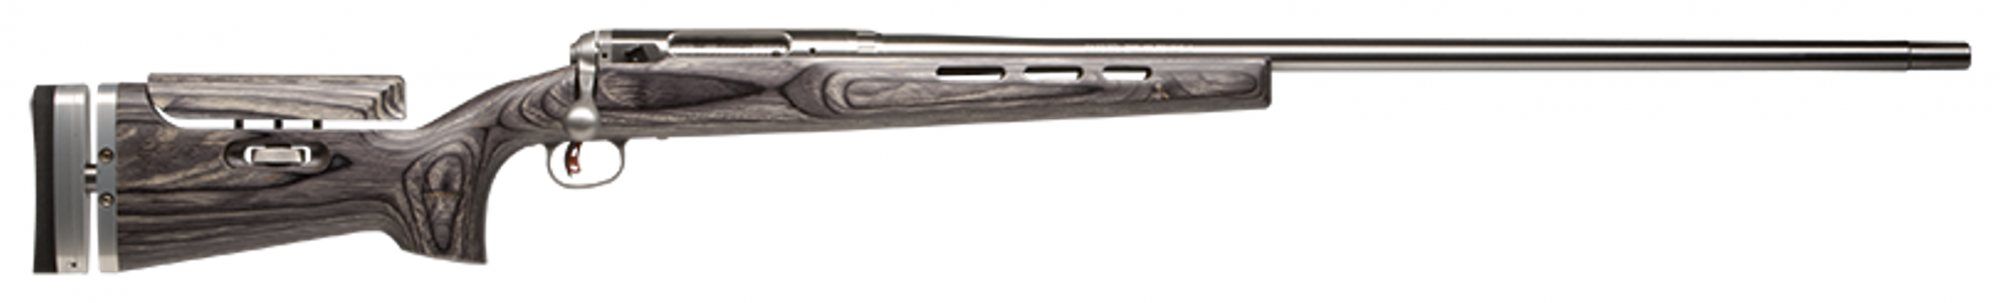 Savage .223 FTR Rifle